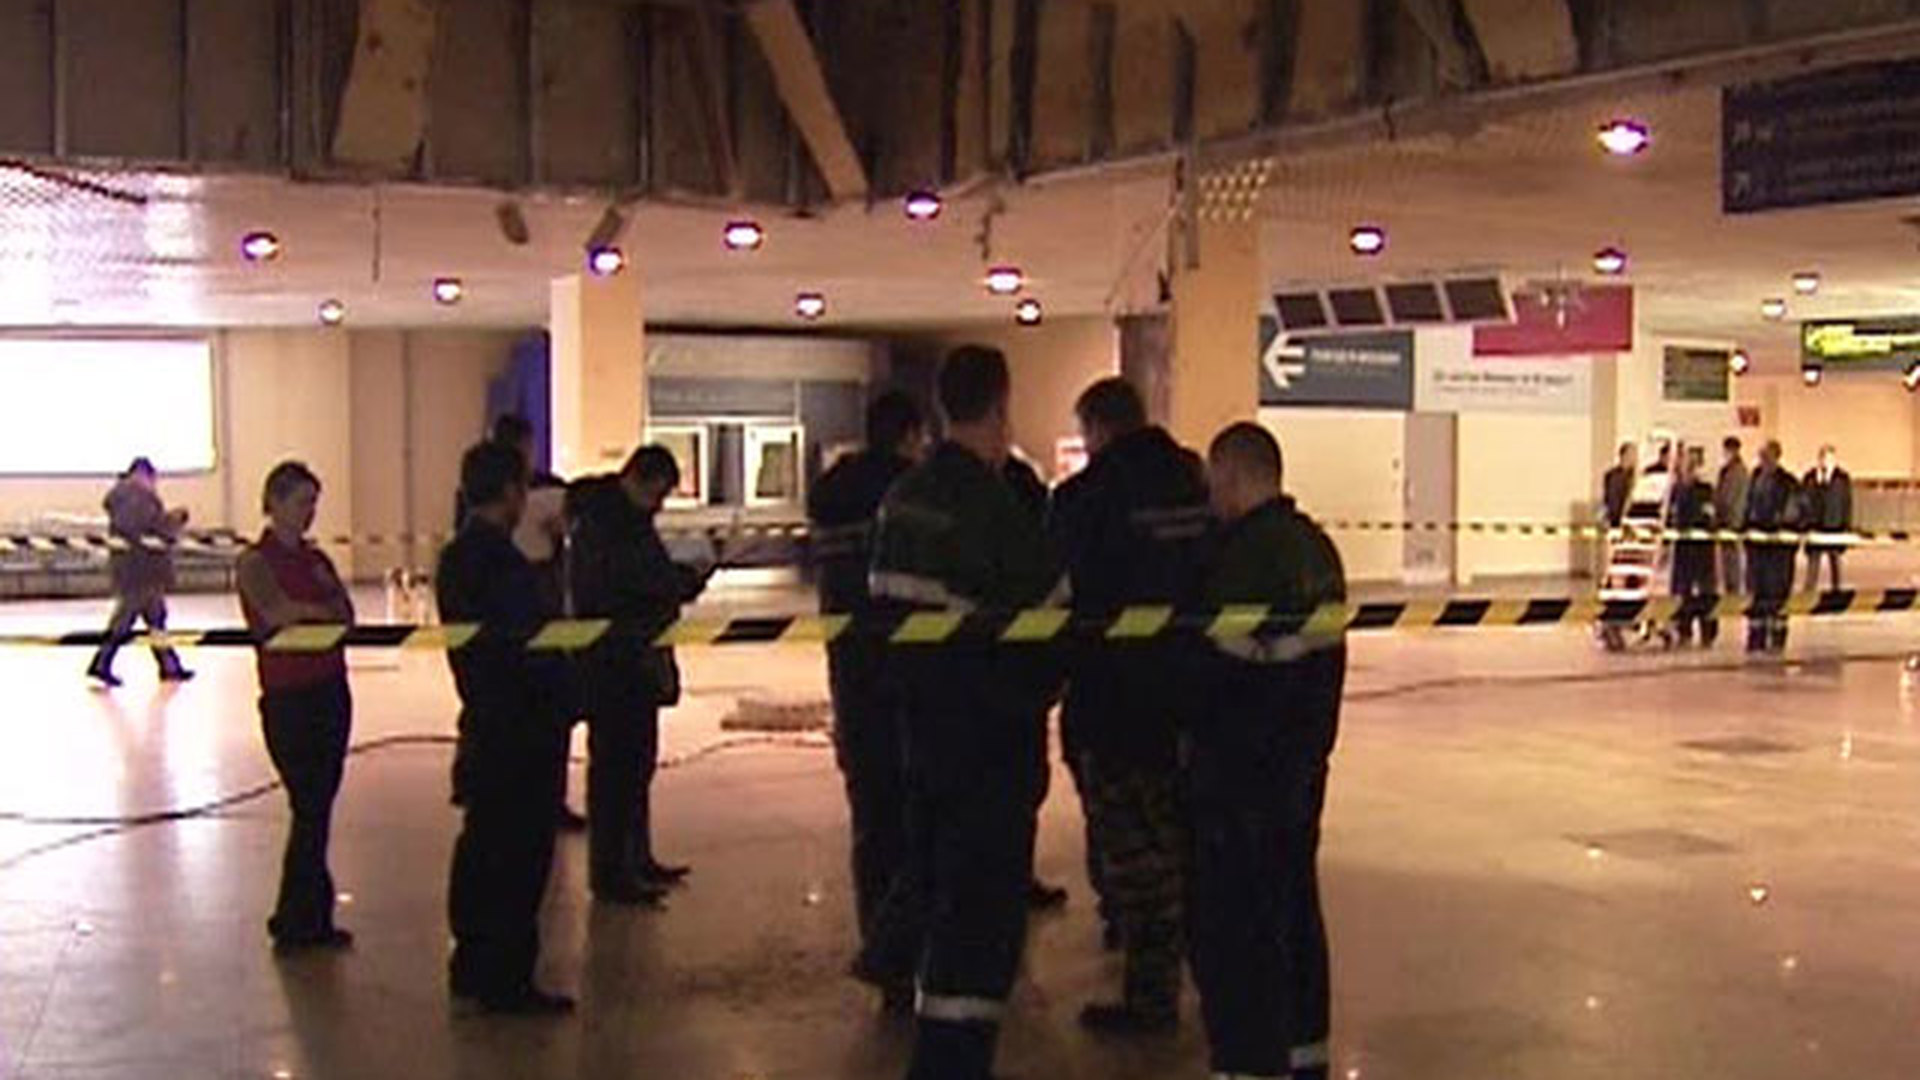 теракт в аэропорту домодедово в 2011